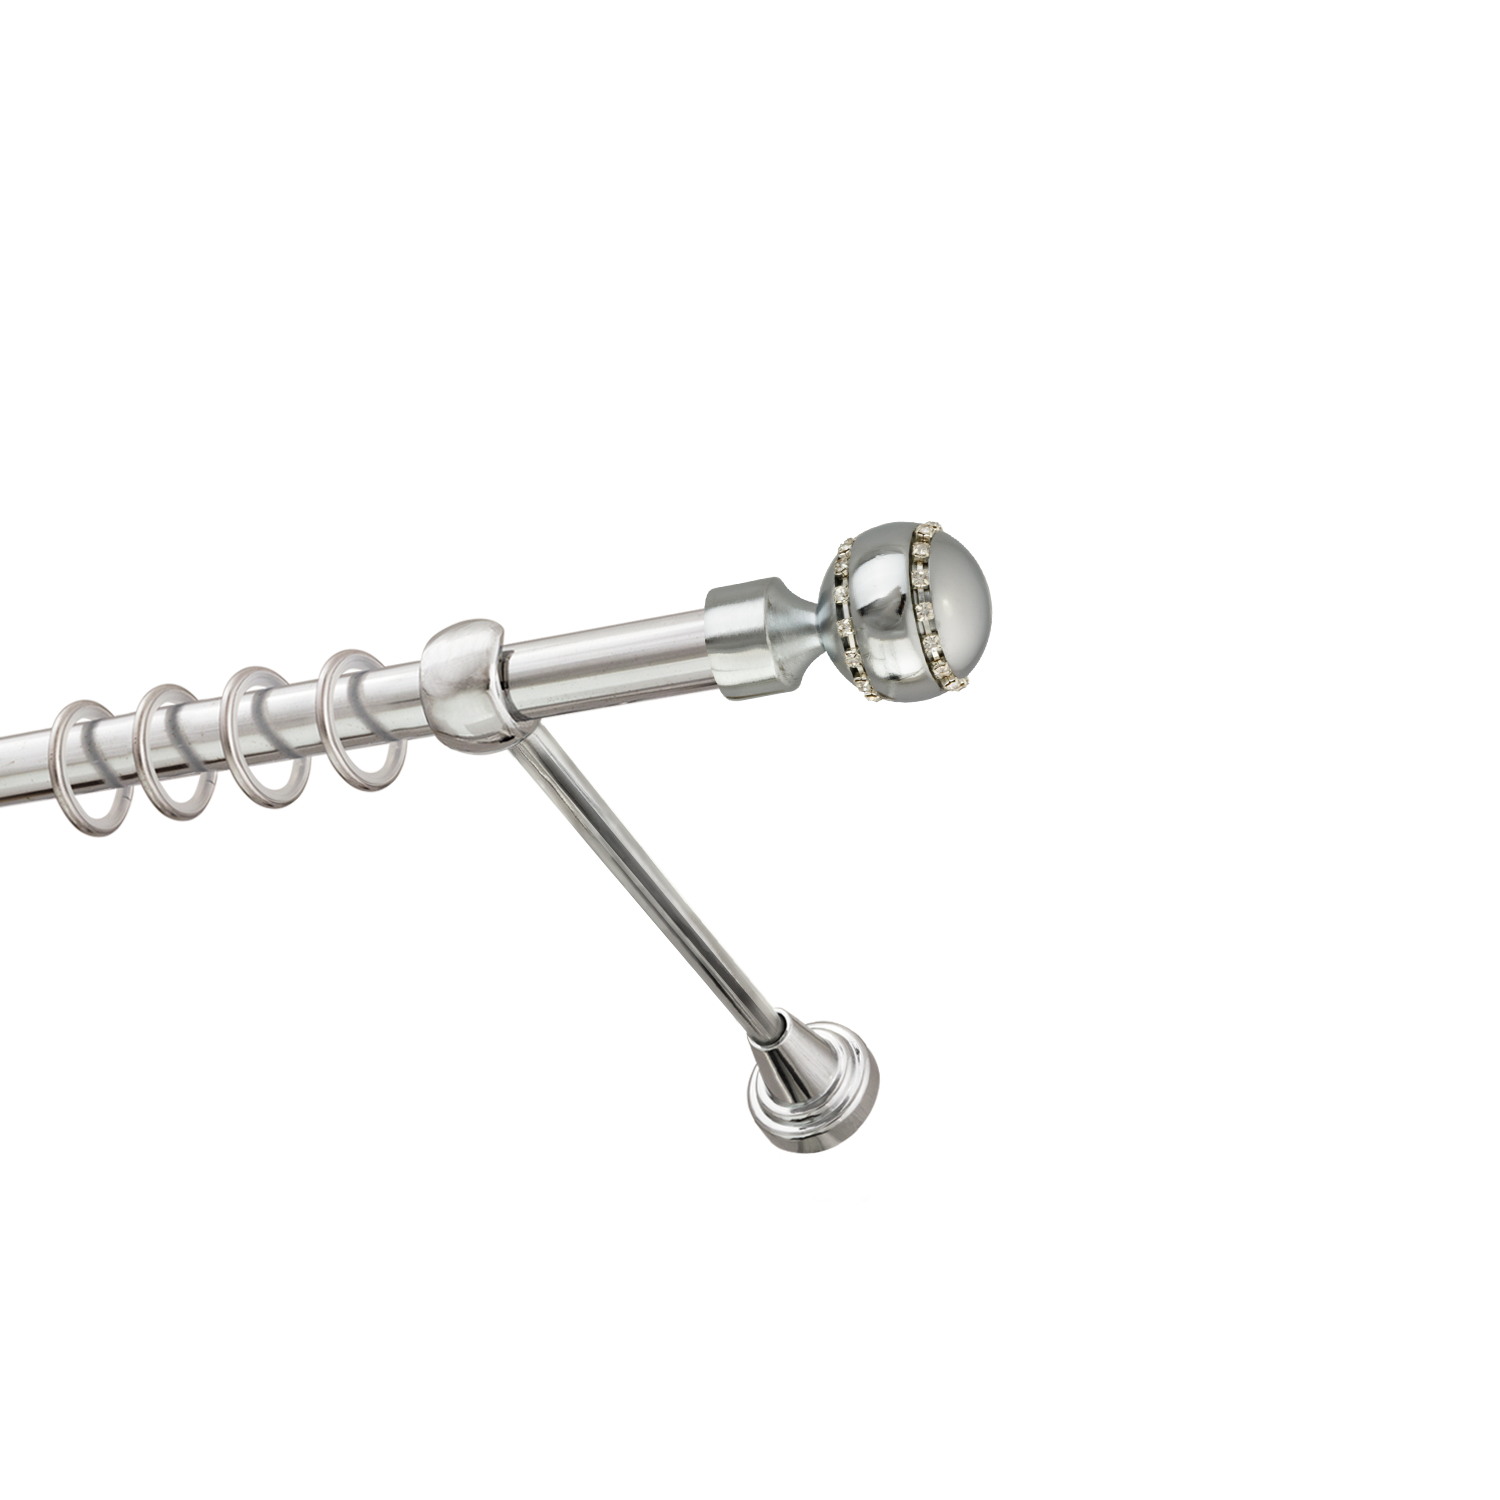 Металлический карниз для штор Модерн, однорядный 16 мм, серебро, гладкая штанга, длина 200 см - фото Wikidecor.ru